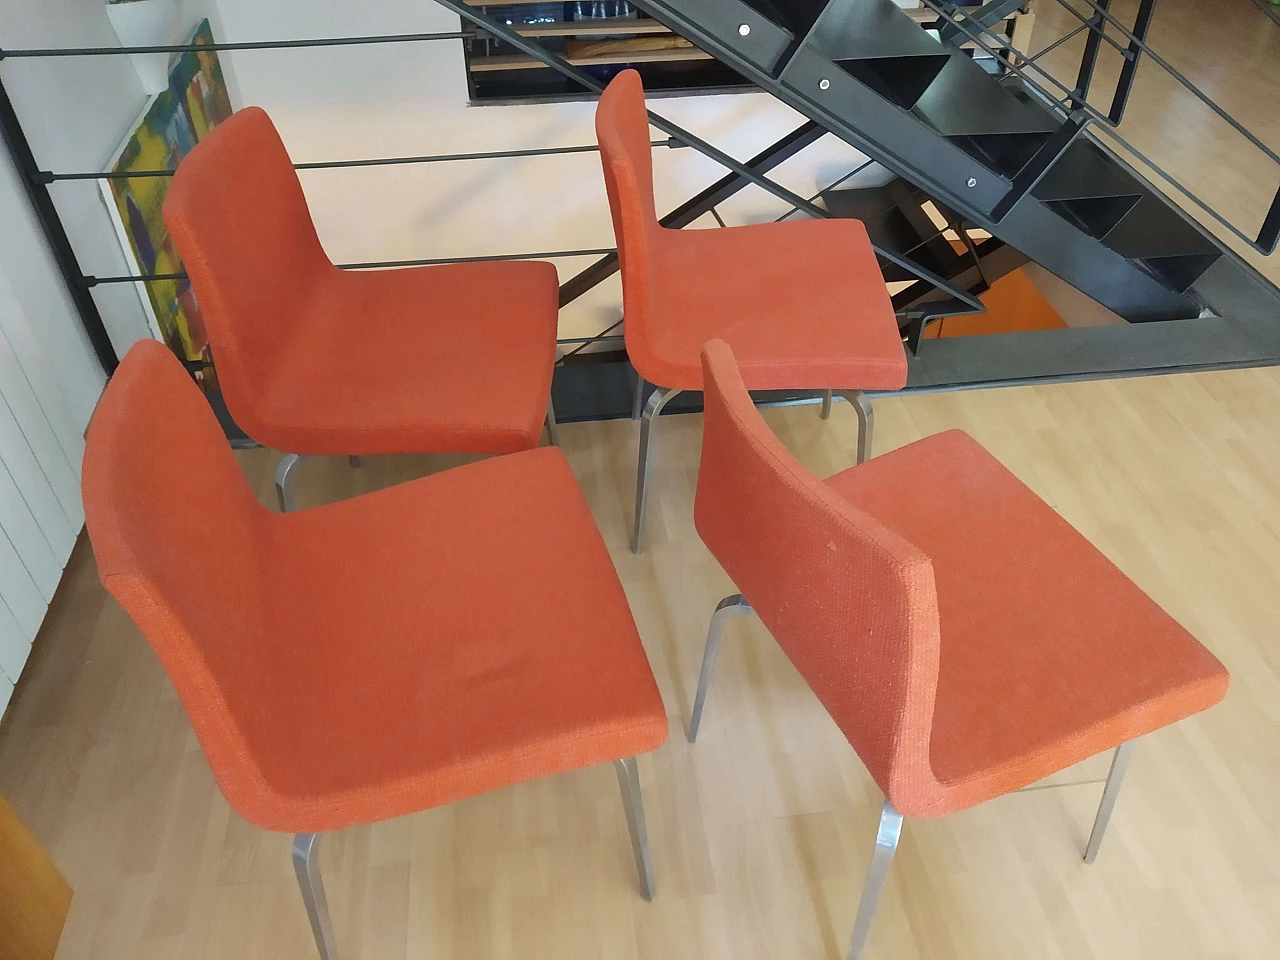 4 Hella Chairs by Mauro Lipparini for MisuraEmme 1477153